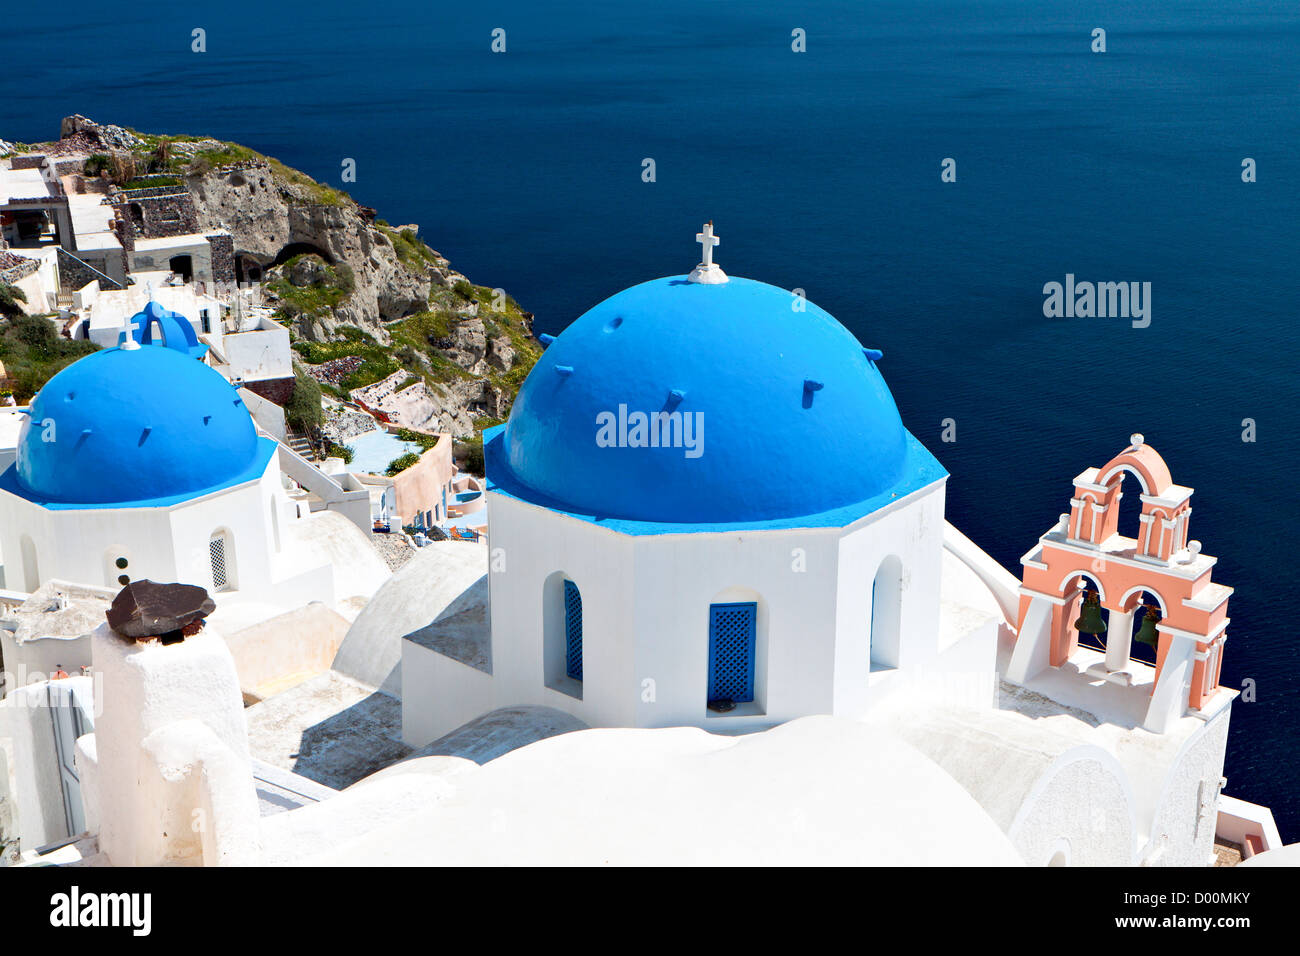 L'île de Santorin à la mer Egée en Grèce. Célèbre station balnéaire méditerranéenne Banque D'Images